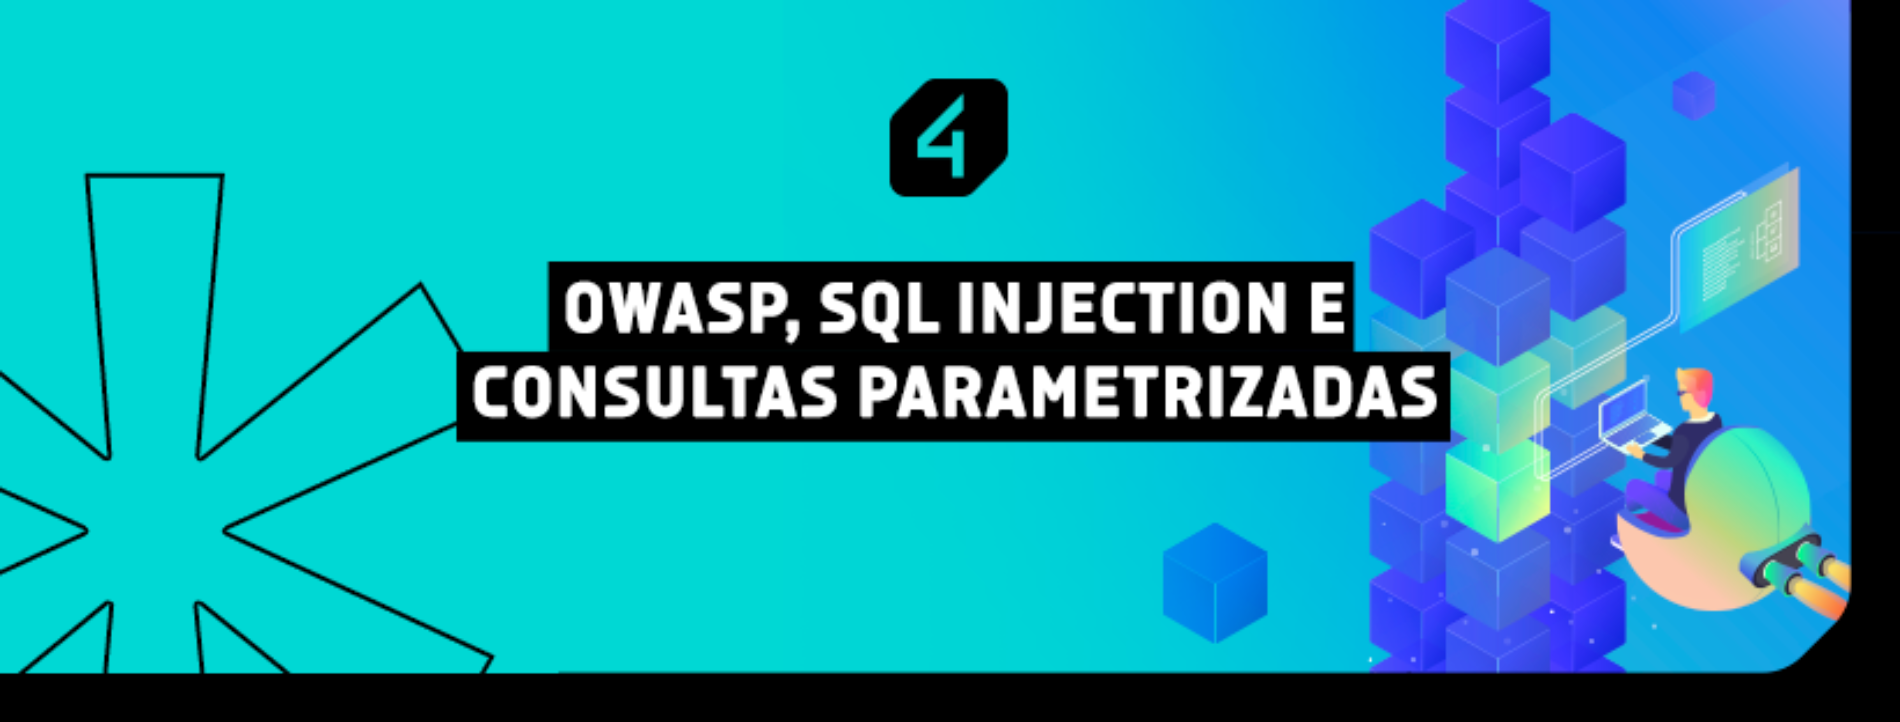 OWASP, SQL Injection e consultas parametrizadas